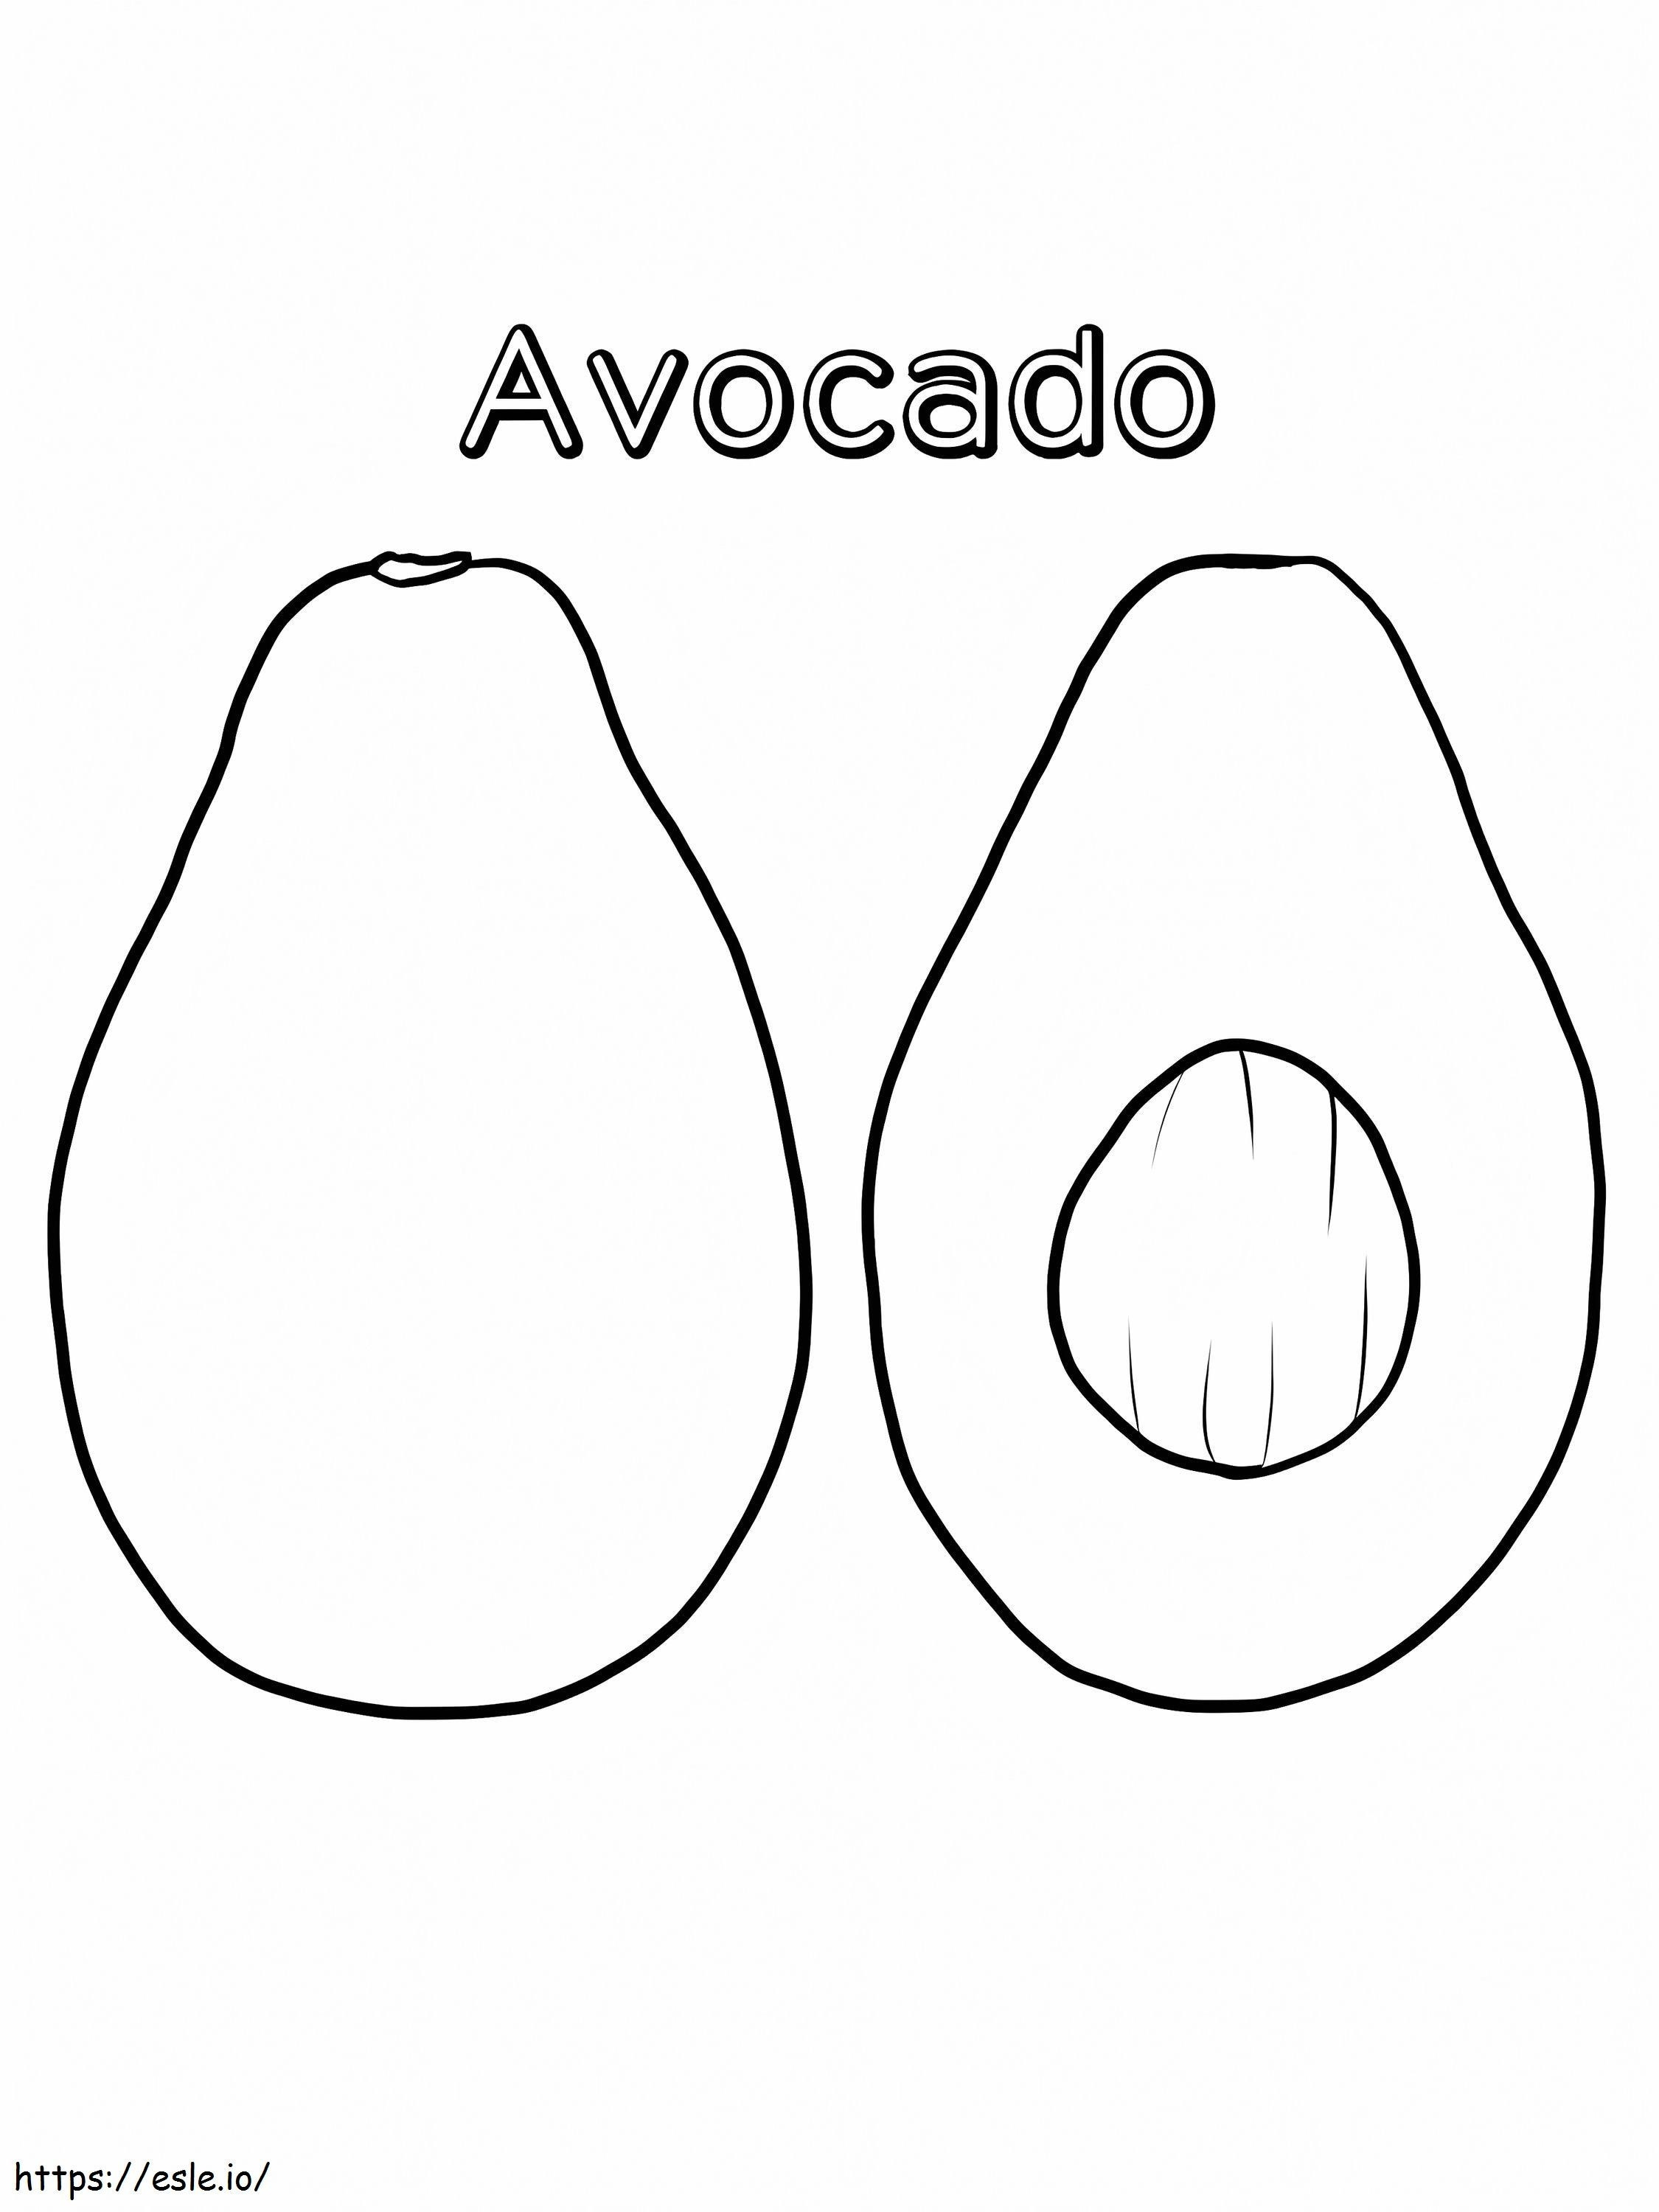 Avocado And A Half 1 coloring page